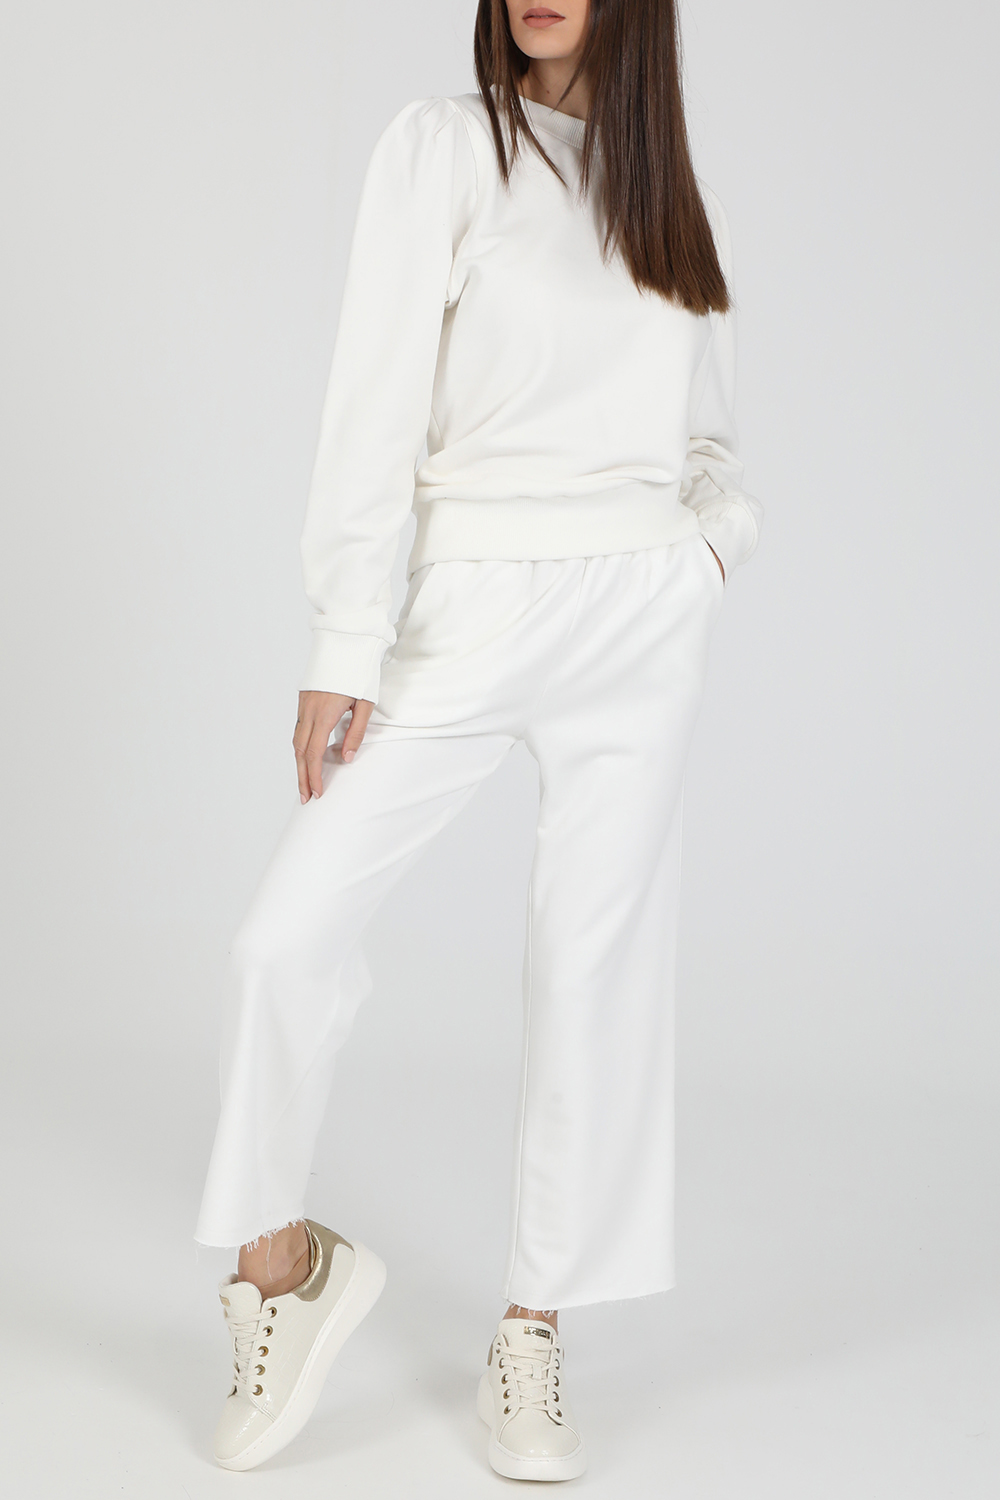 LA DOLLS – Γυναικείο παντελόνι LA DOLLS COSY λευκό 1820919.0-0090